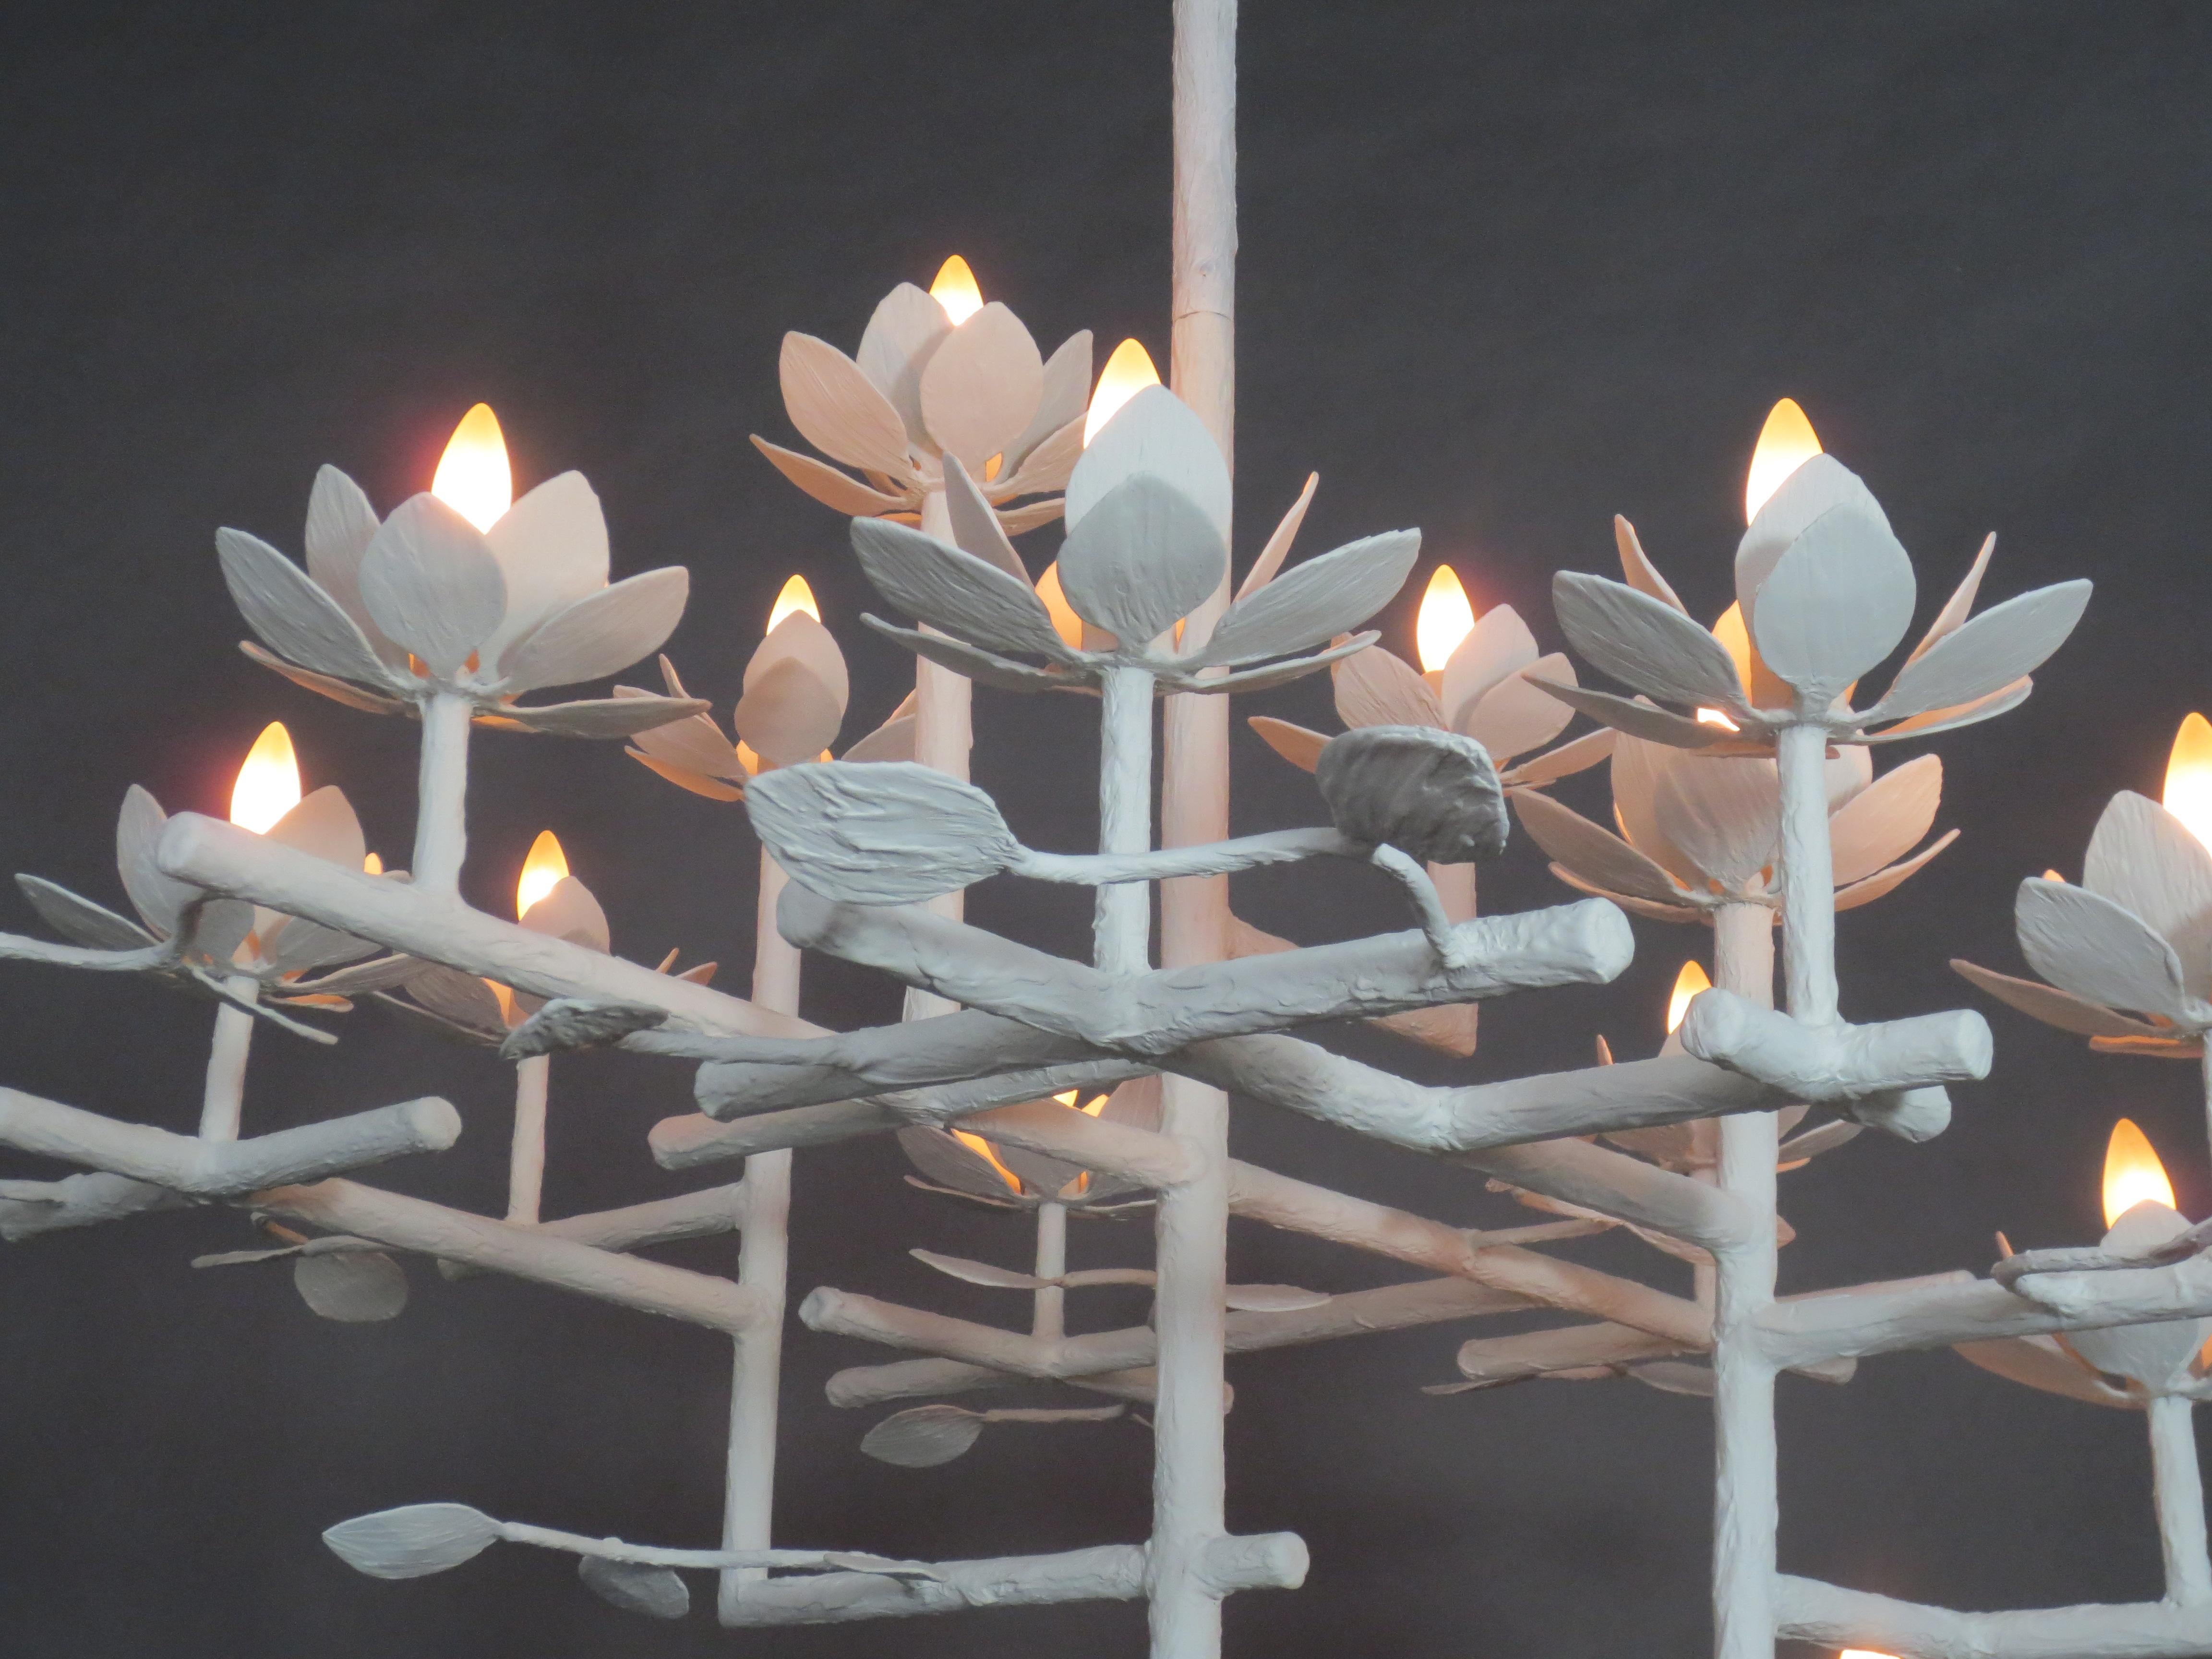 Lustre en plâtre de Lotus comprimé par Tracey Garet de Apsara Interior Design.
Le lustre Lotus compressé comporte plusieurs couches et est présenté en plâtre blanc. Il y a 12 fleurs de lotus et des branches partout. Chaque fleur contient une lumière